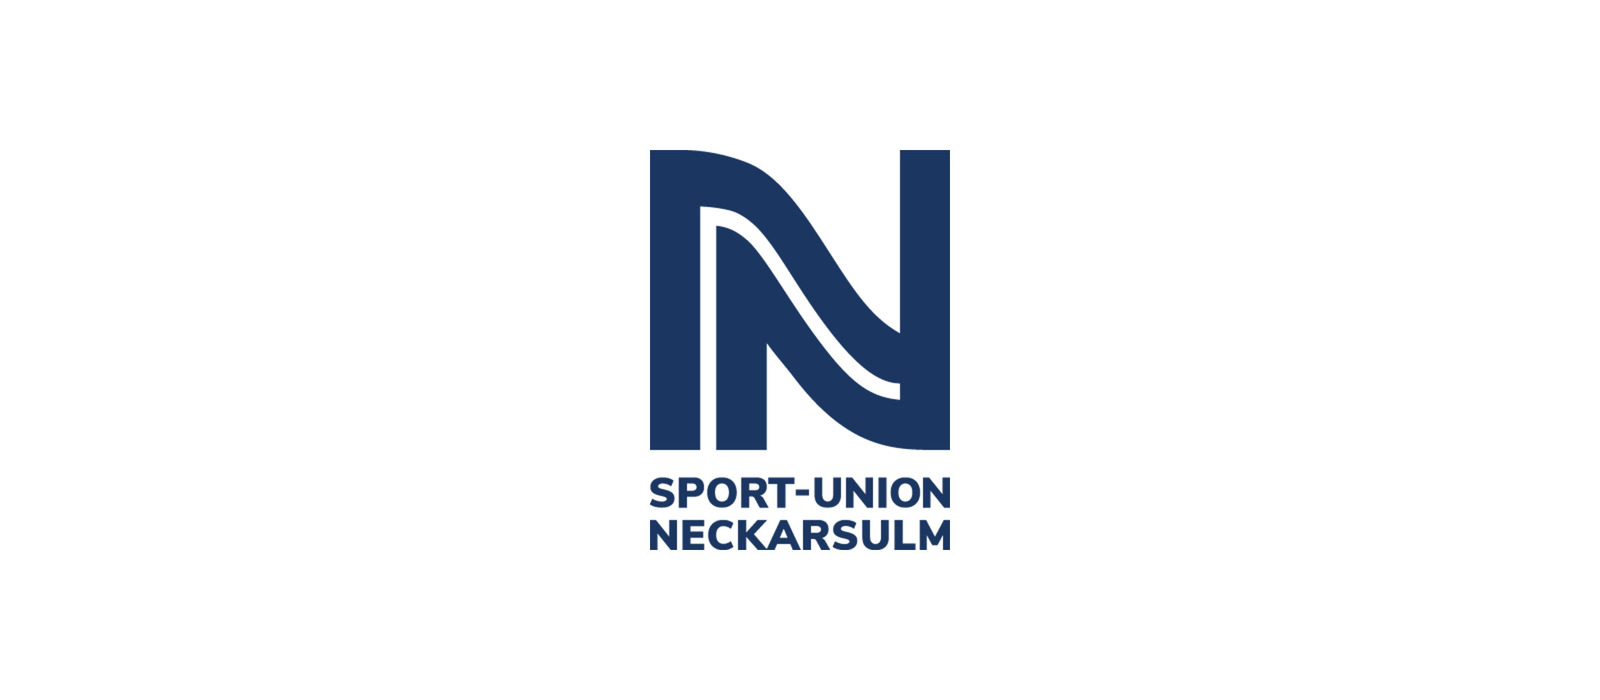 Sport-Union Neckarsulm vs HSG Bad Wildungen Vipers